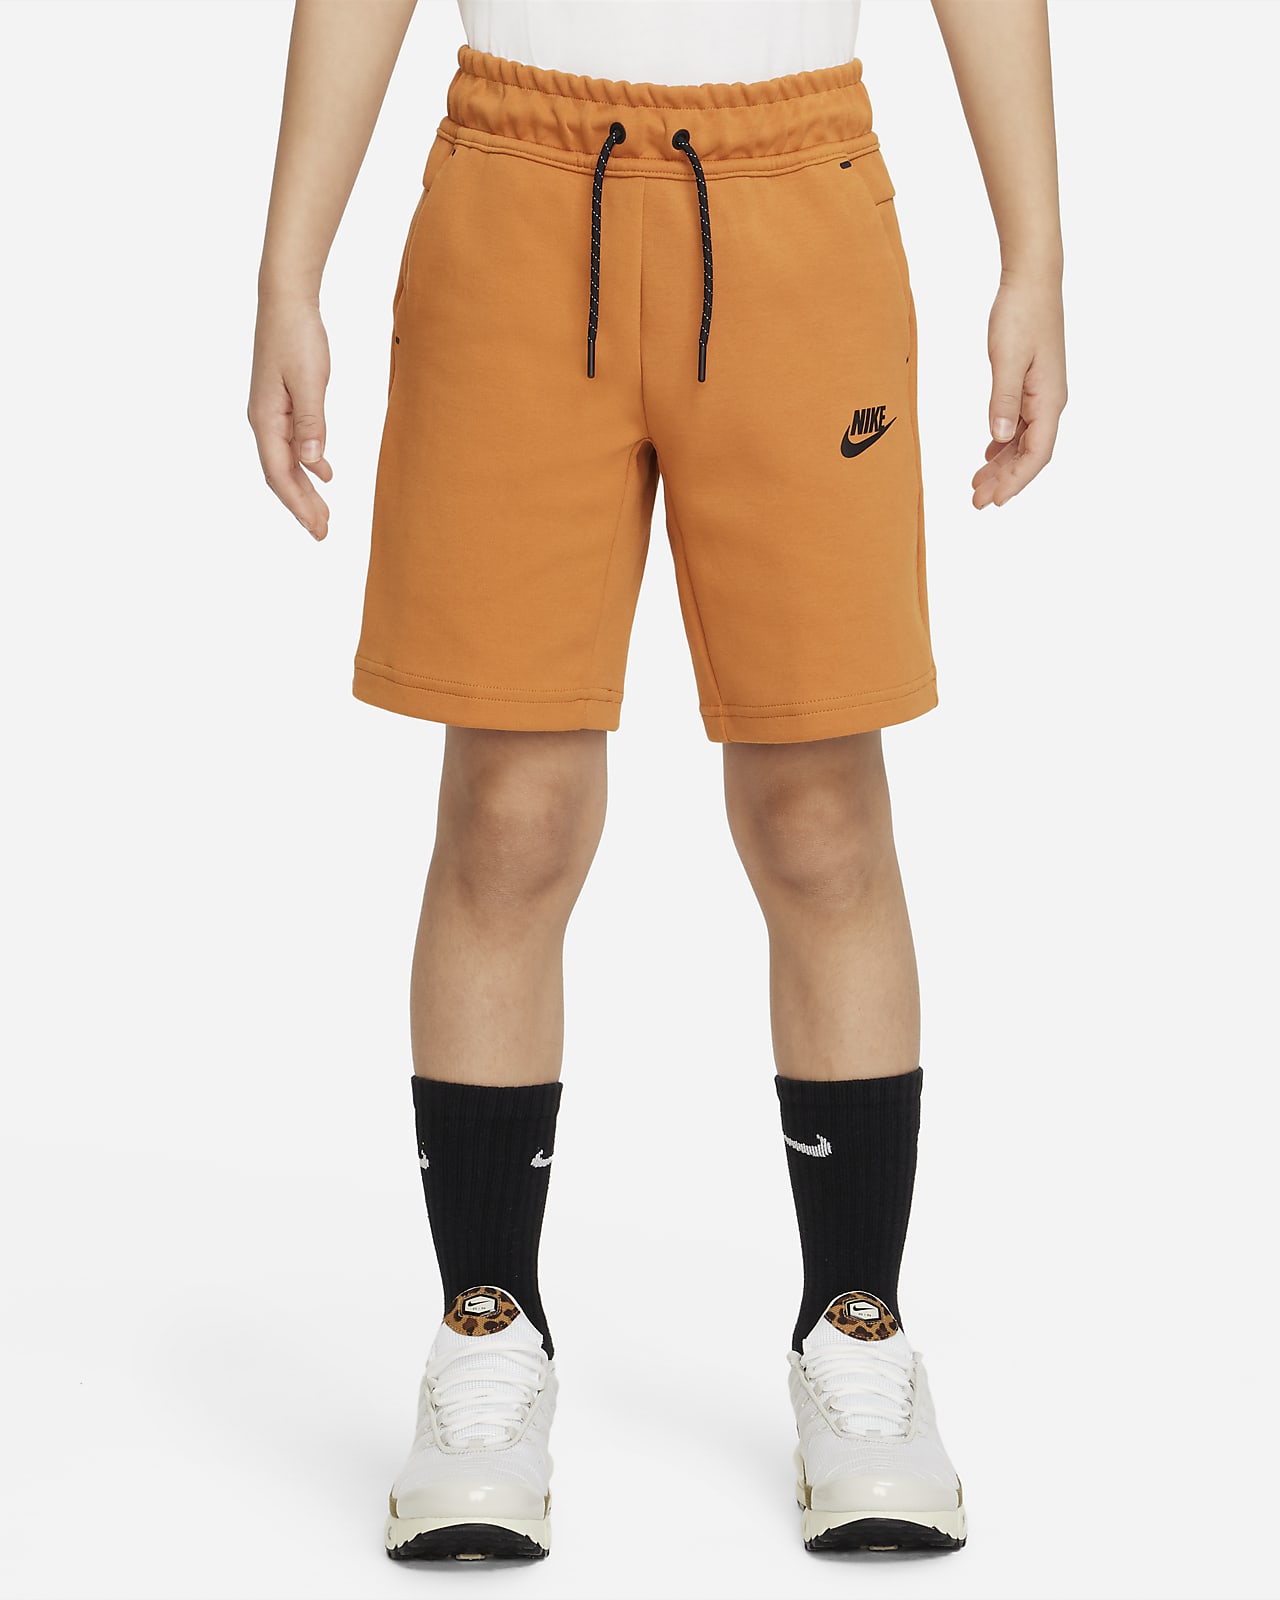 rijm staart magnifiek Nike Sportswear Tech Fleece Older Kids' (Boys') Shorts. Nike LU